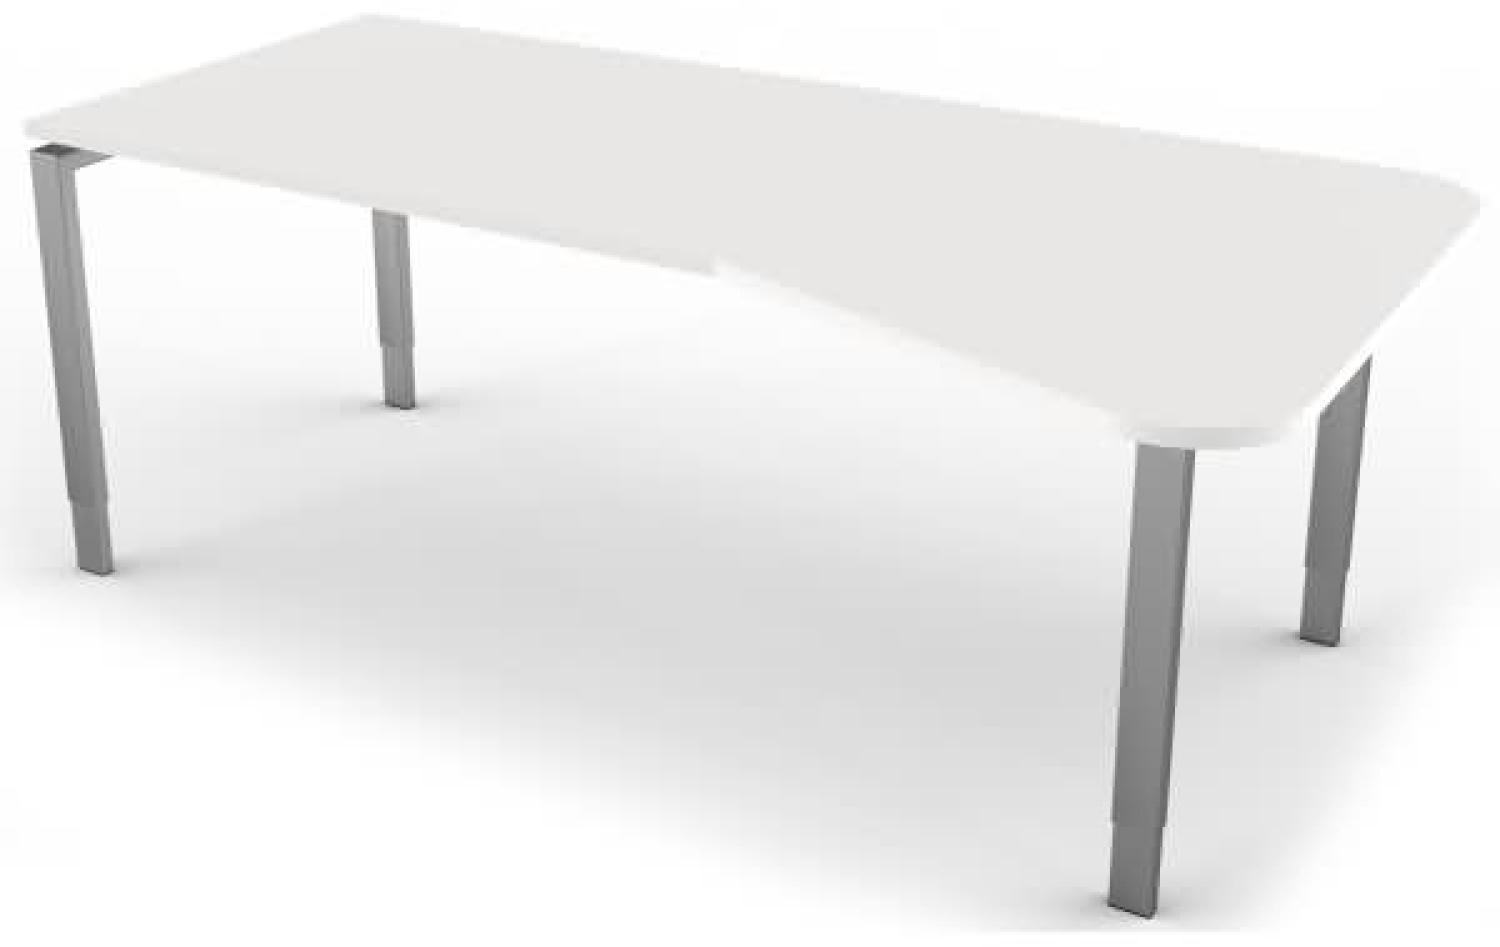 Freiformtisch mit 4-Bein-Gestell, 195x80 / 100cm, Weiß / Silber Bild 1